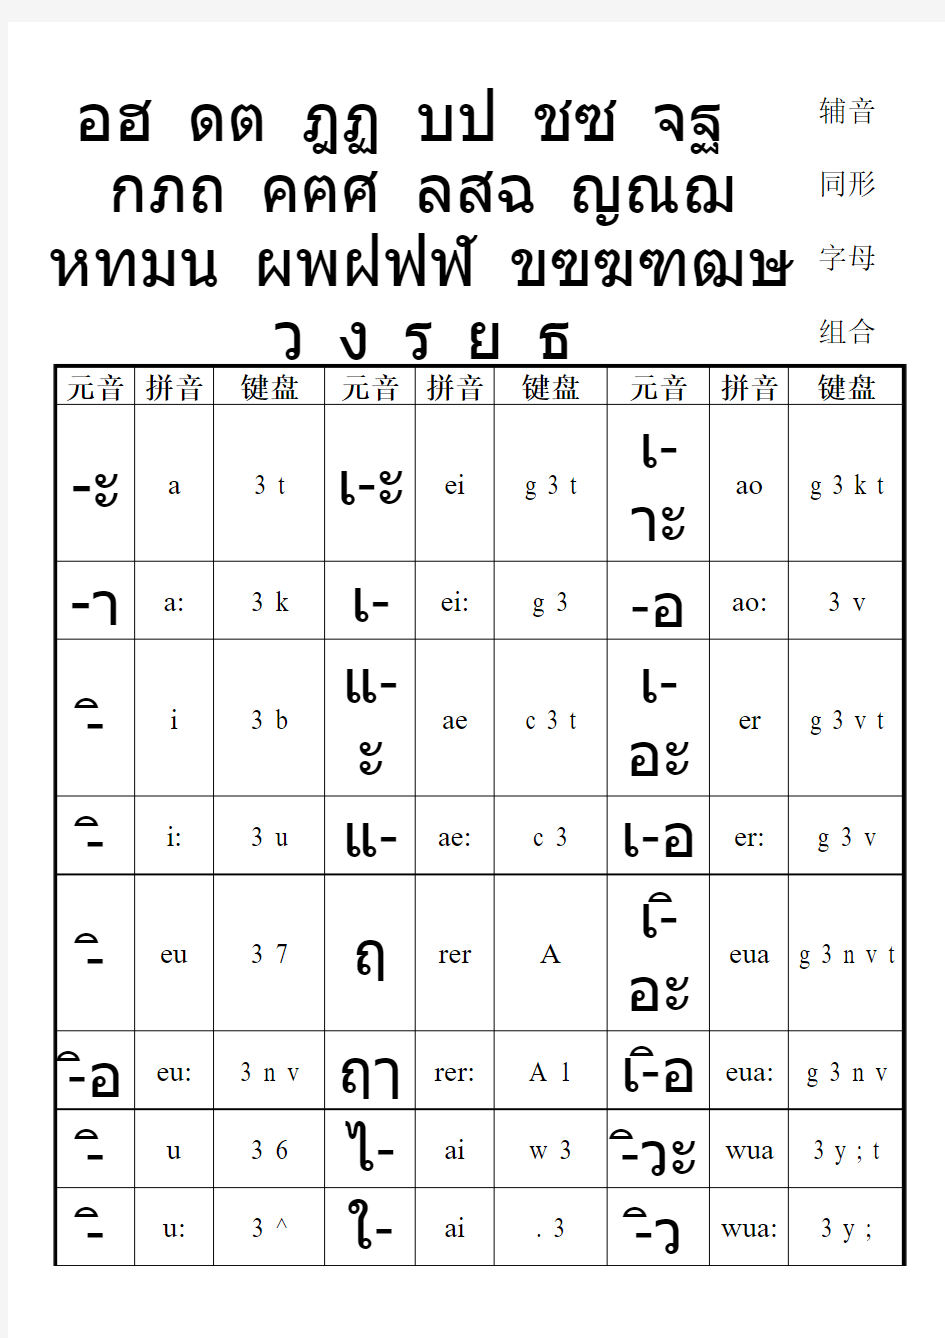 泰语元音表